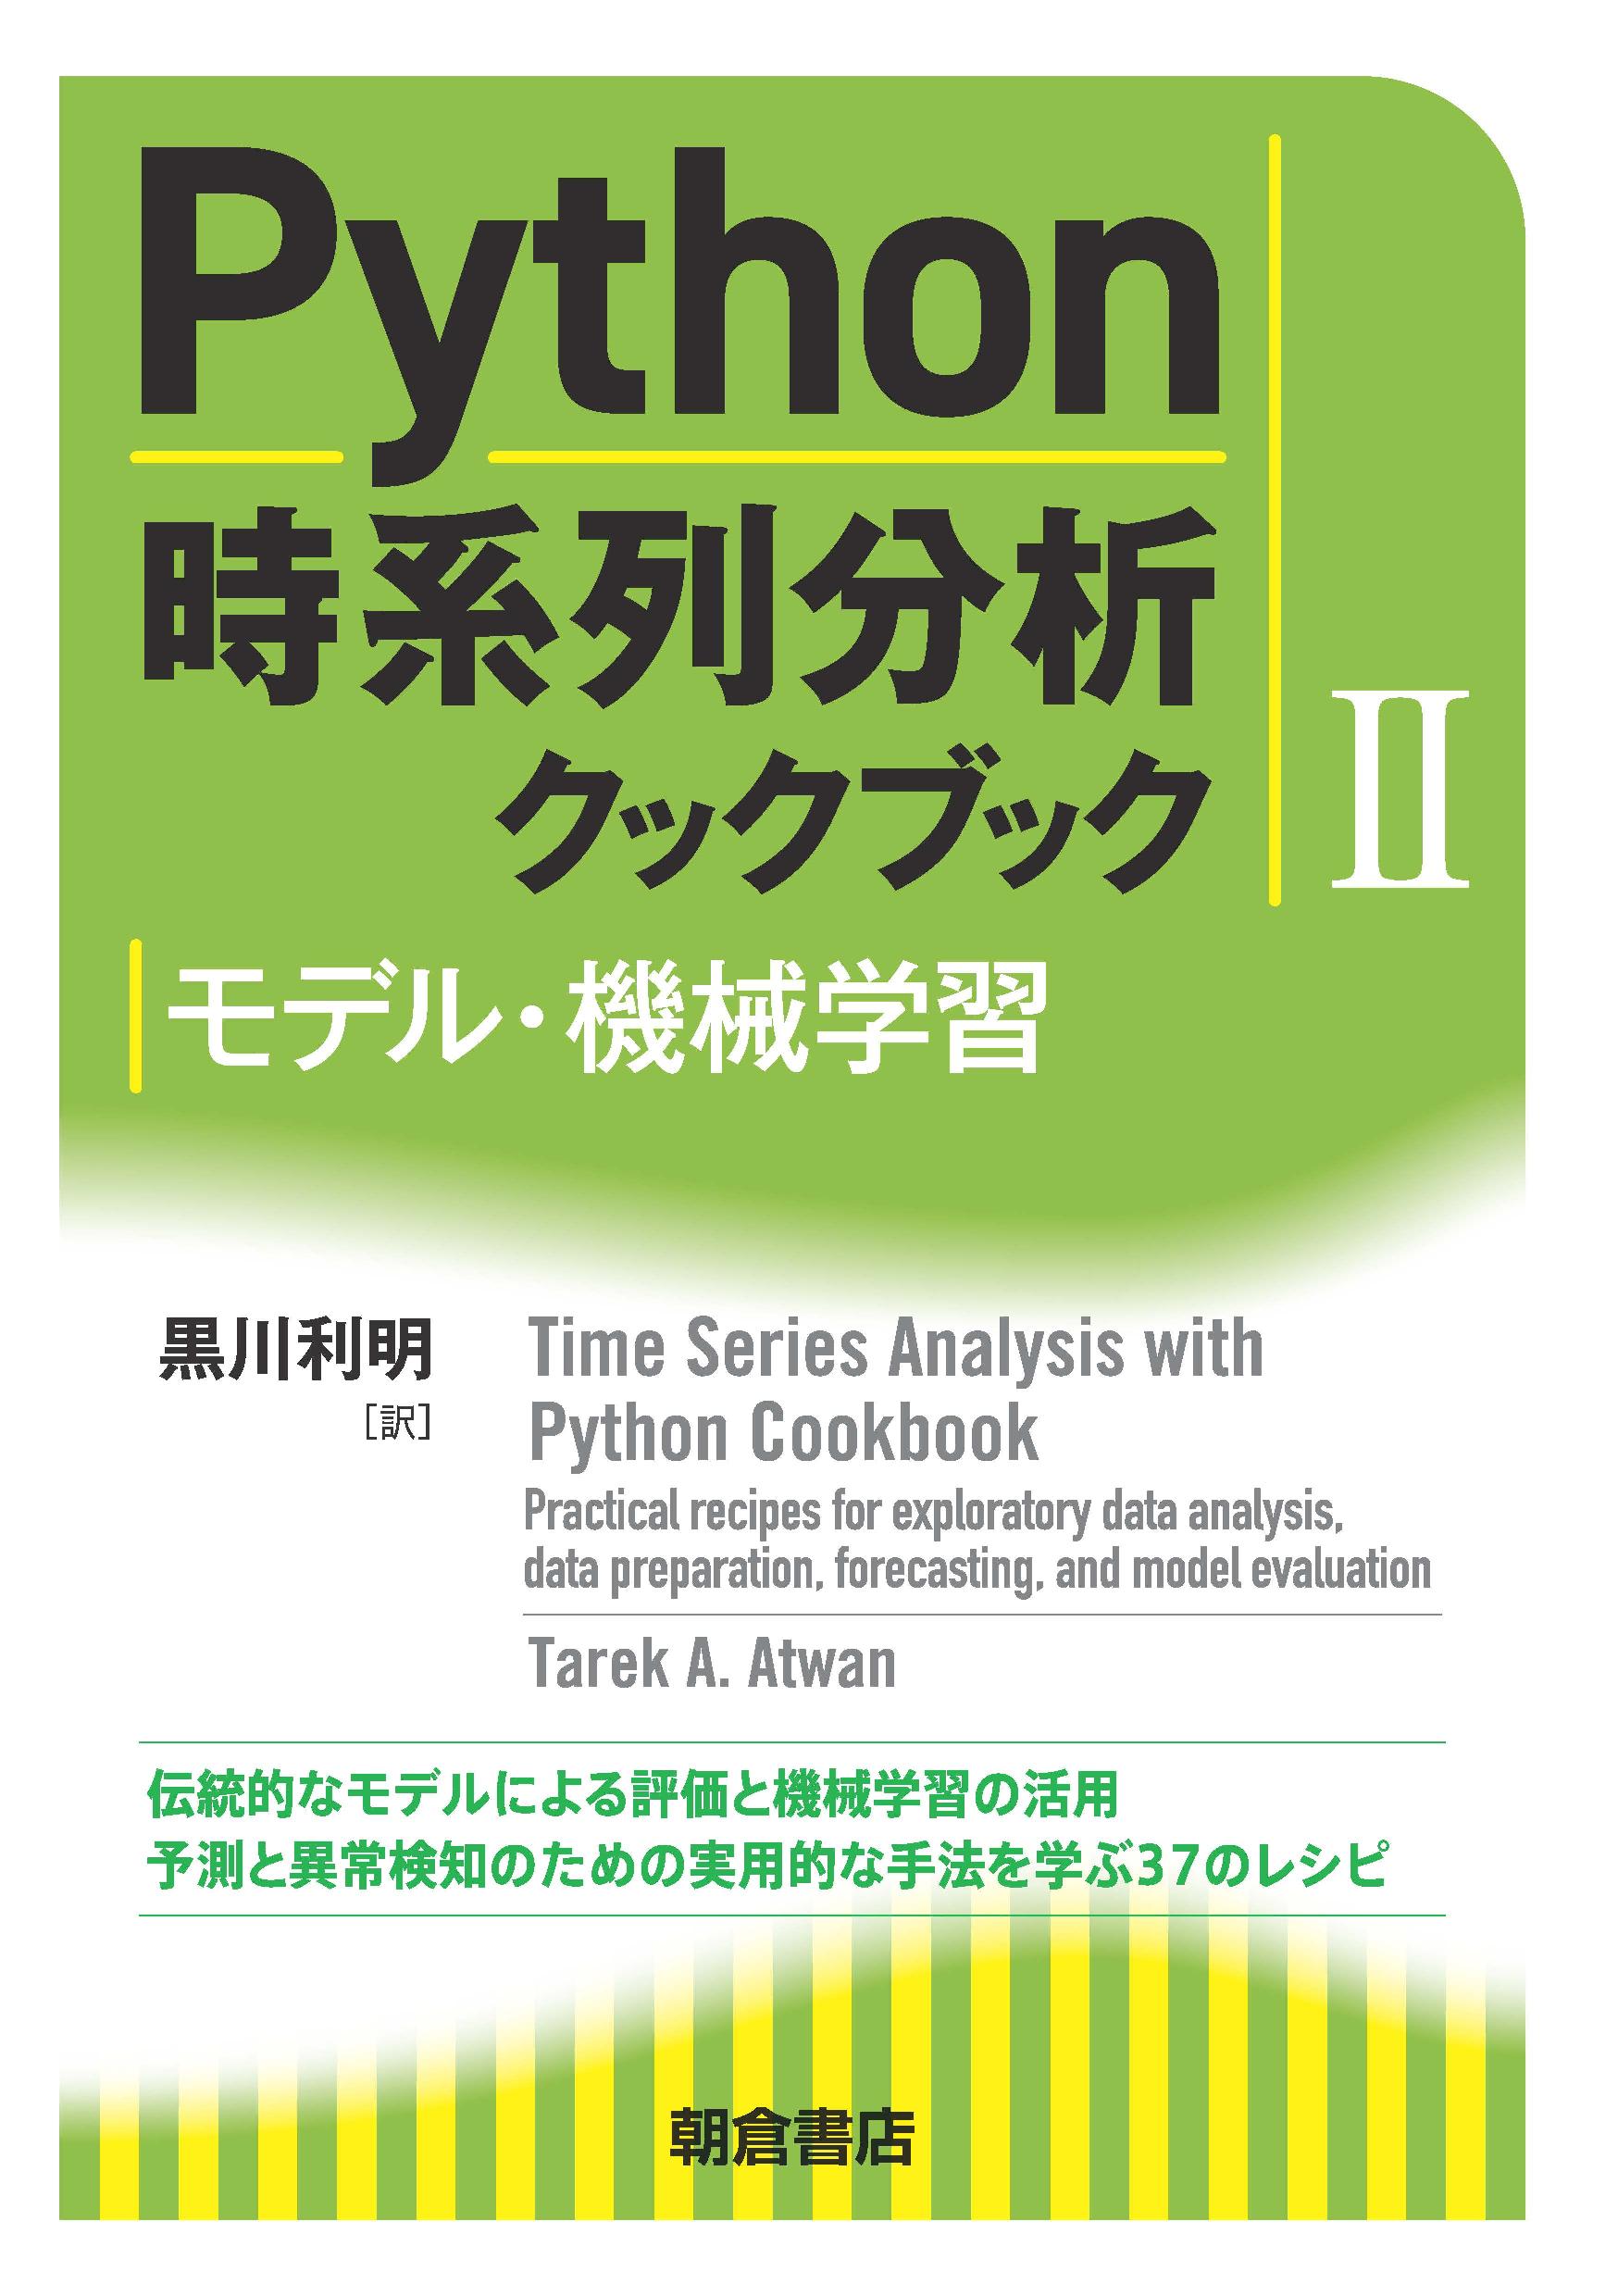 : Python時系列分析クックブック II 